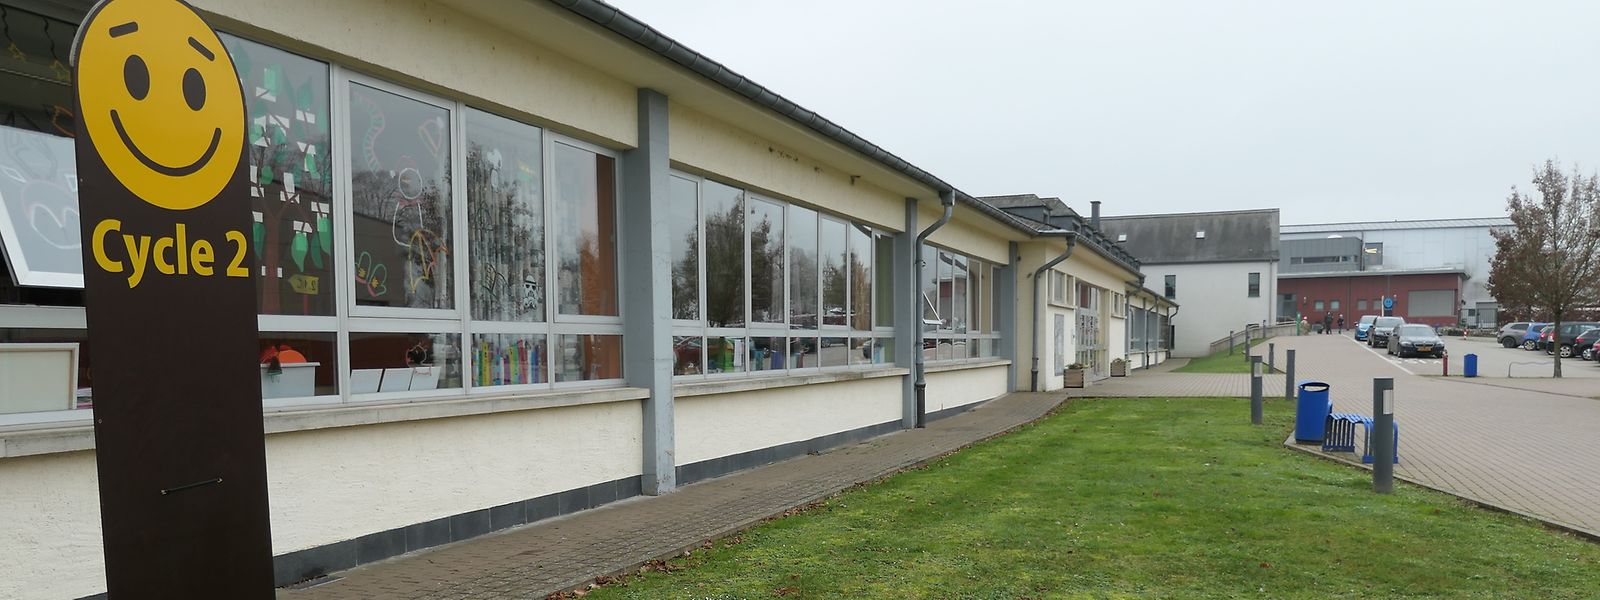 Die noch aus den 1970er-Jahren stammende Zentralschule in Wintger soll in den kommenden Jahren durch ein Bildungshaus ersetzt werden, das Schule und Maison relais optimal verknüpfen soll.